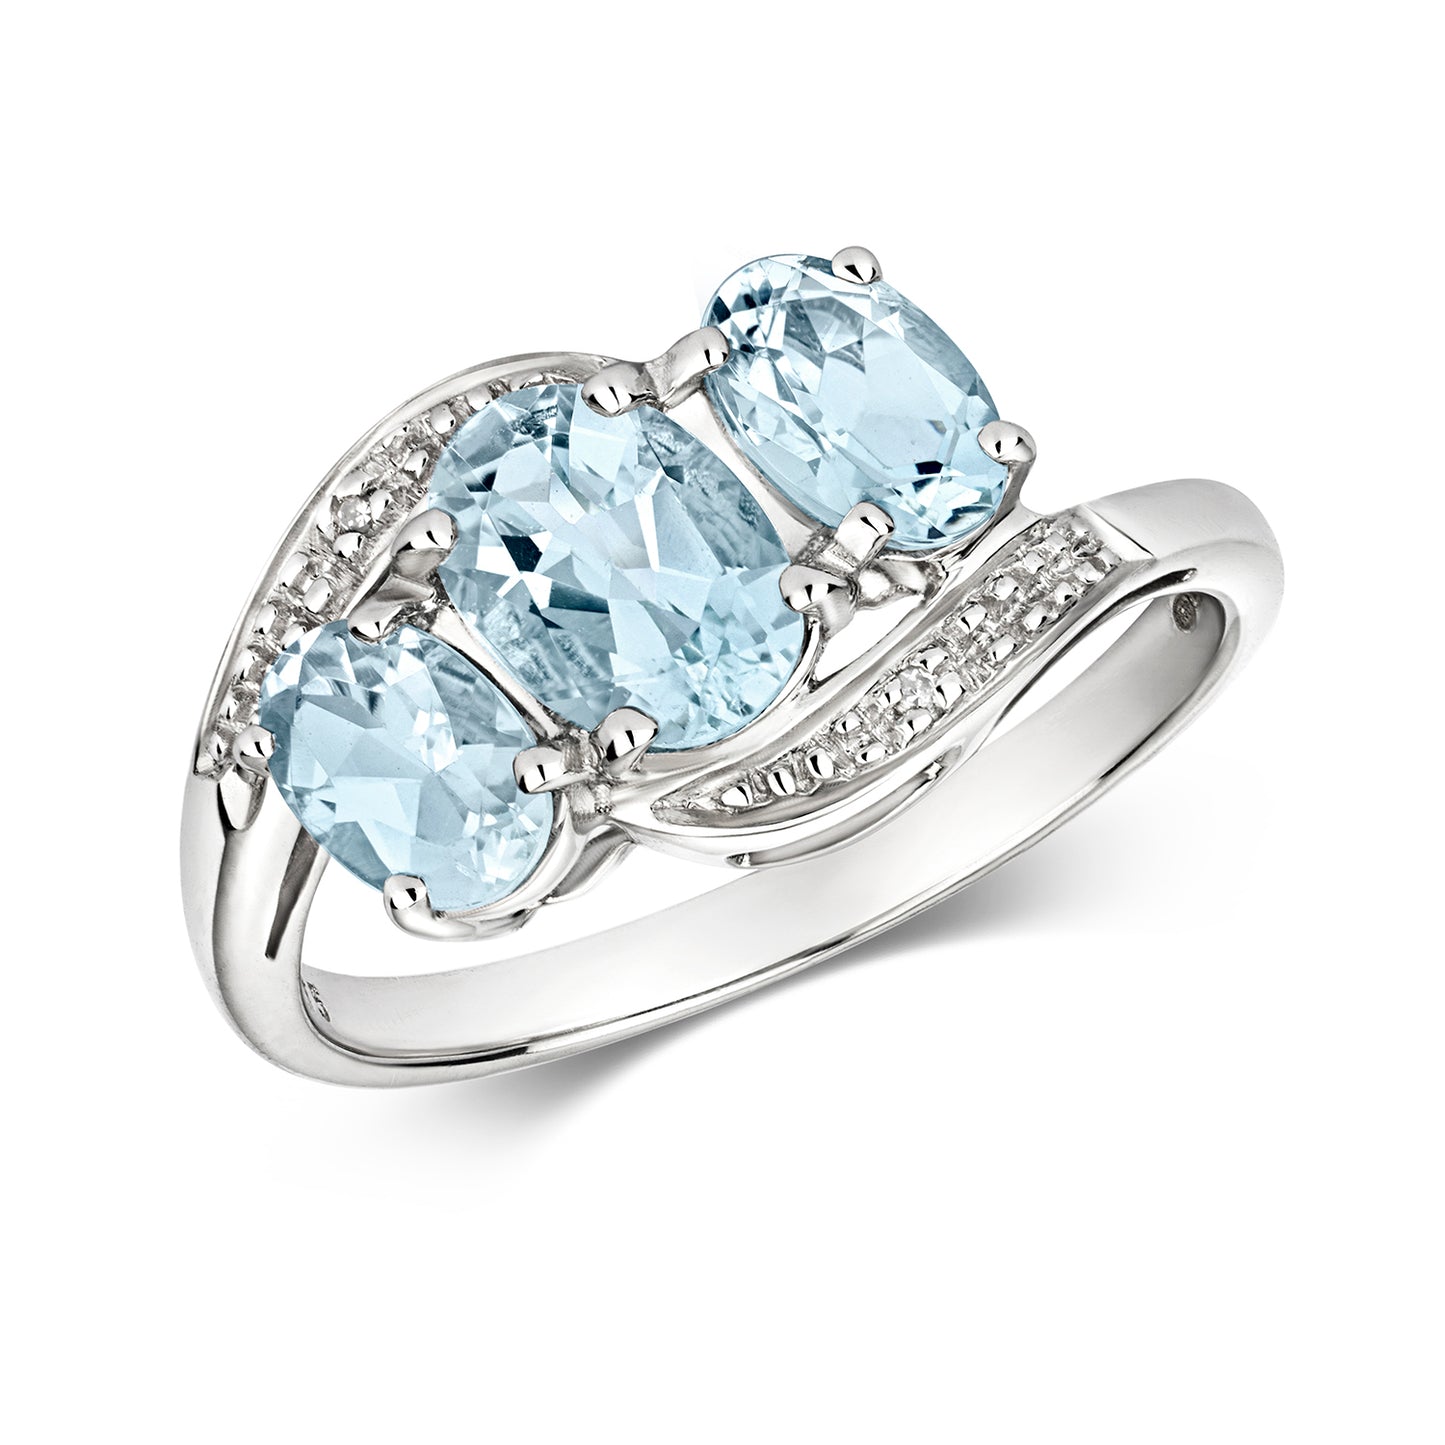 9ct White Gold Aquamarine and Diamond Ring, Ring Sizes J to Q (211)